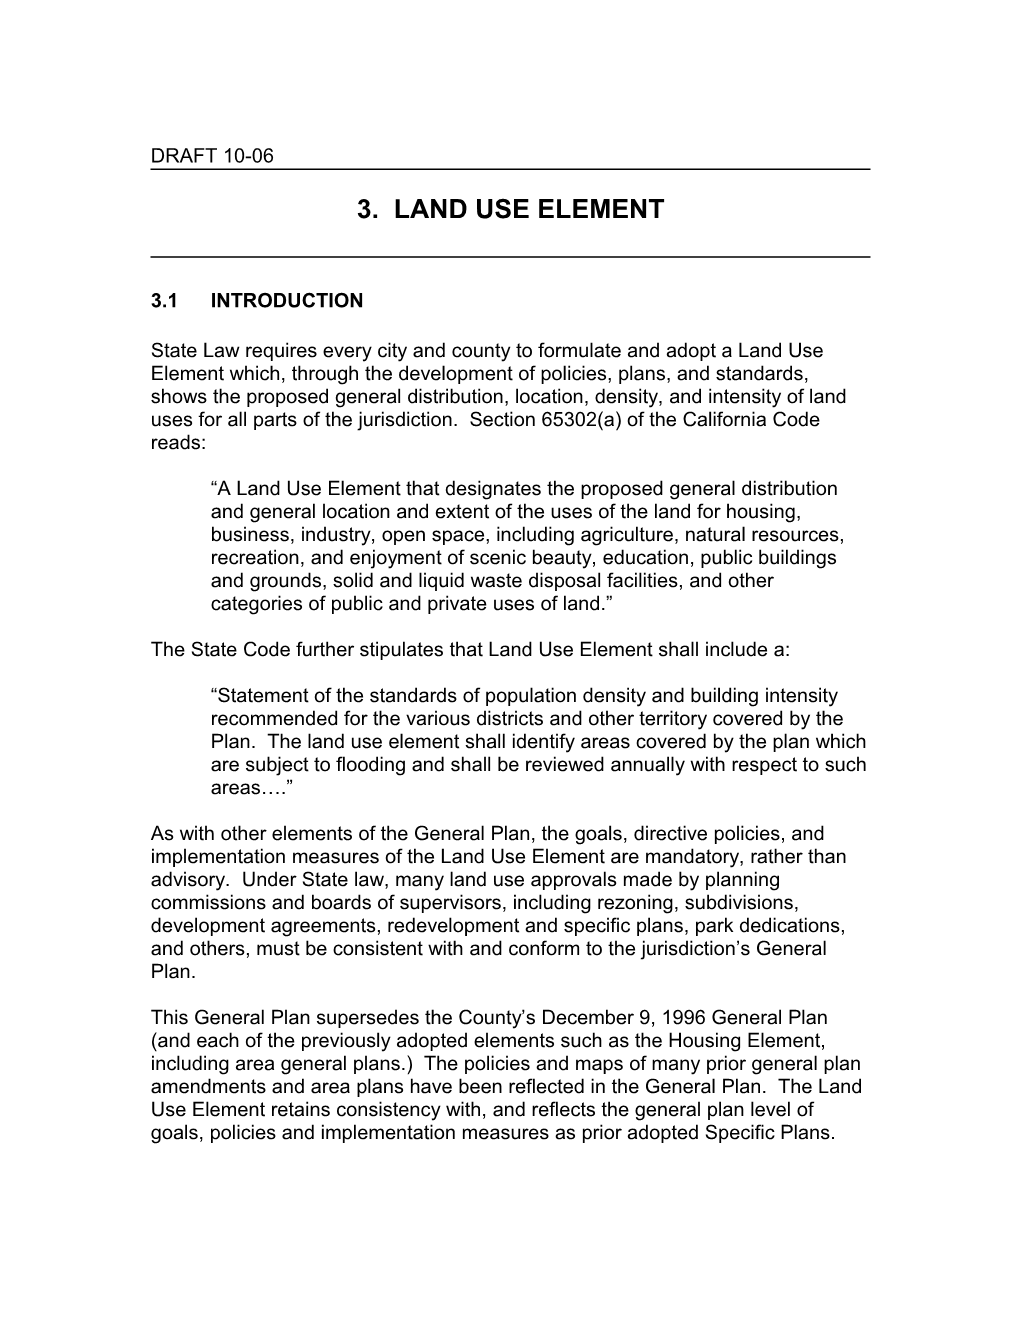 3. Land Use Element